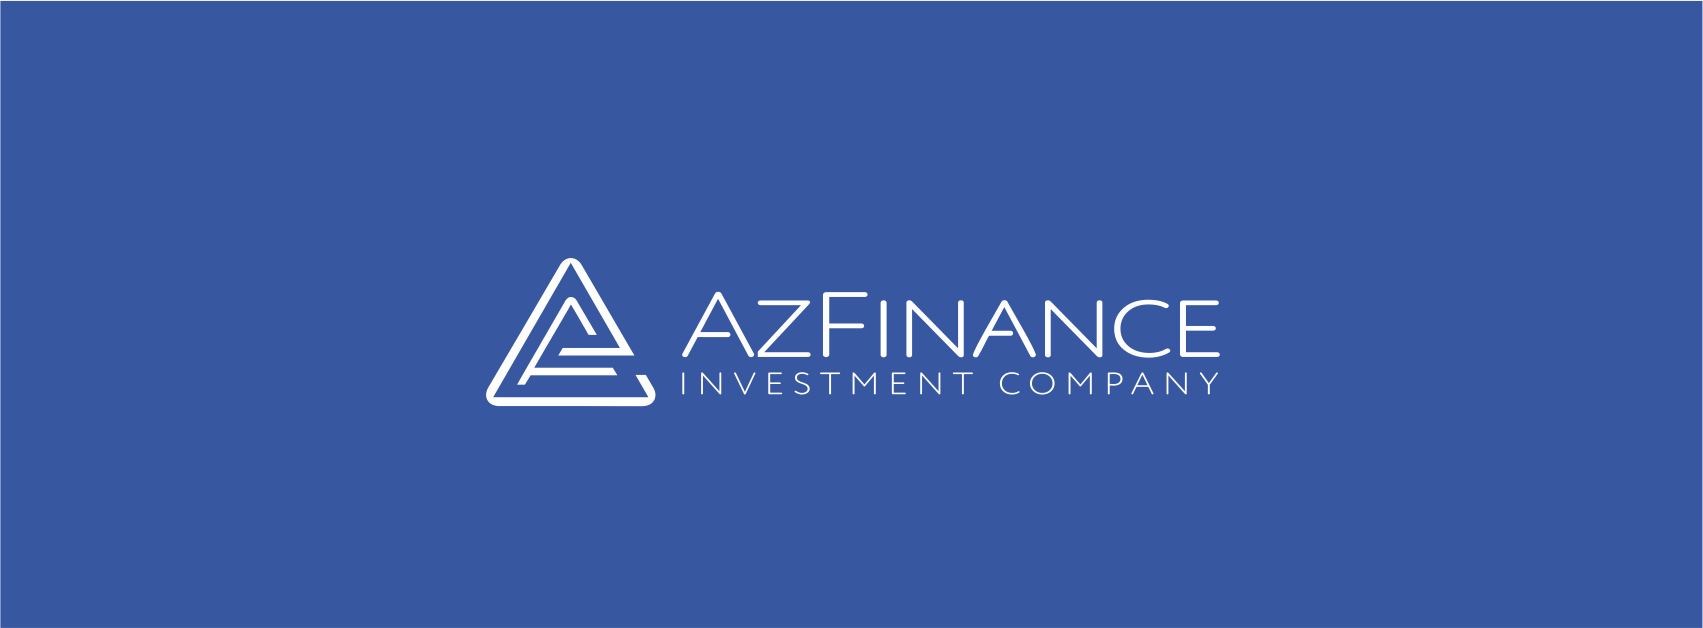 AzFinance